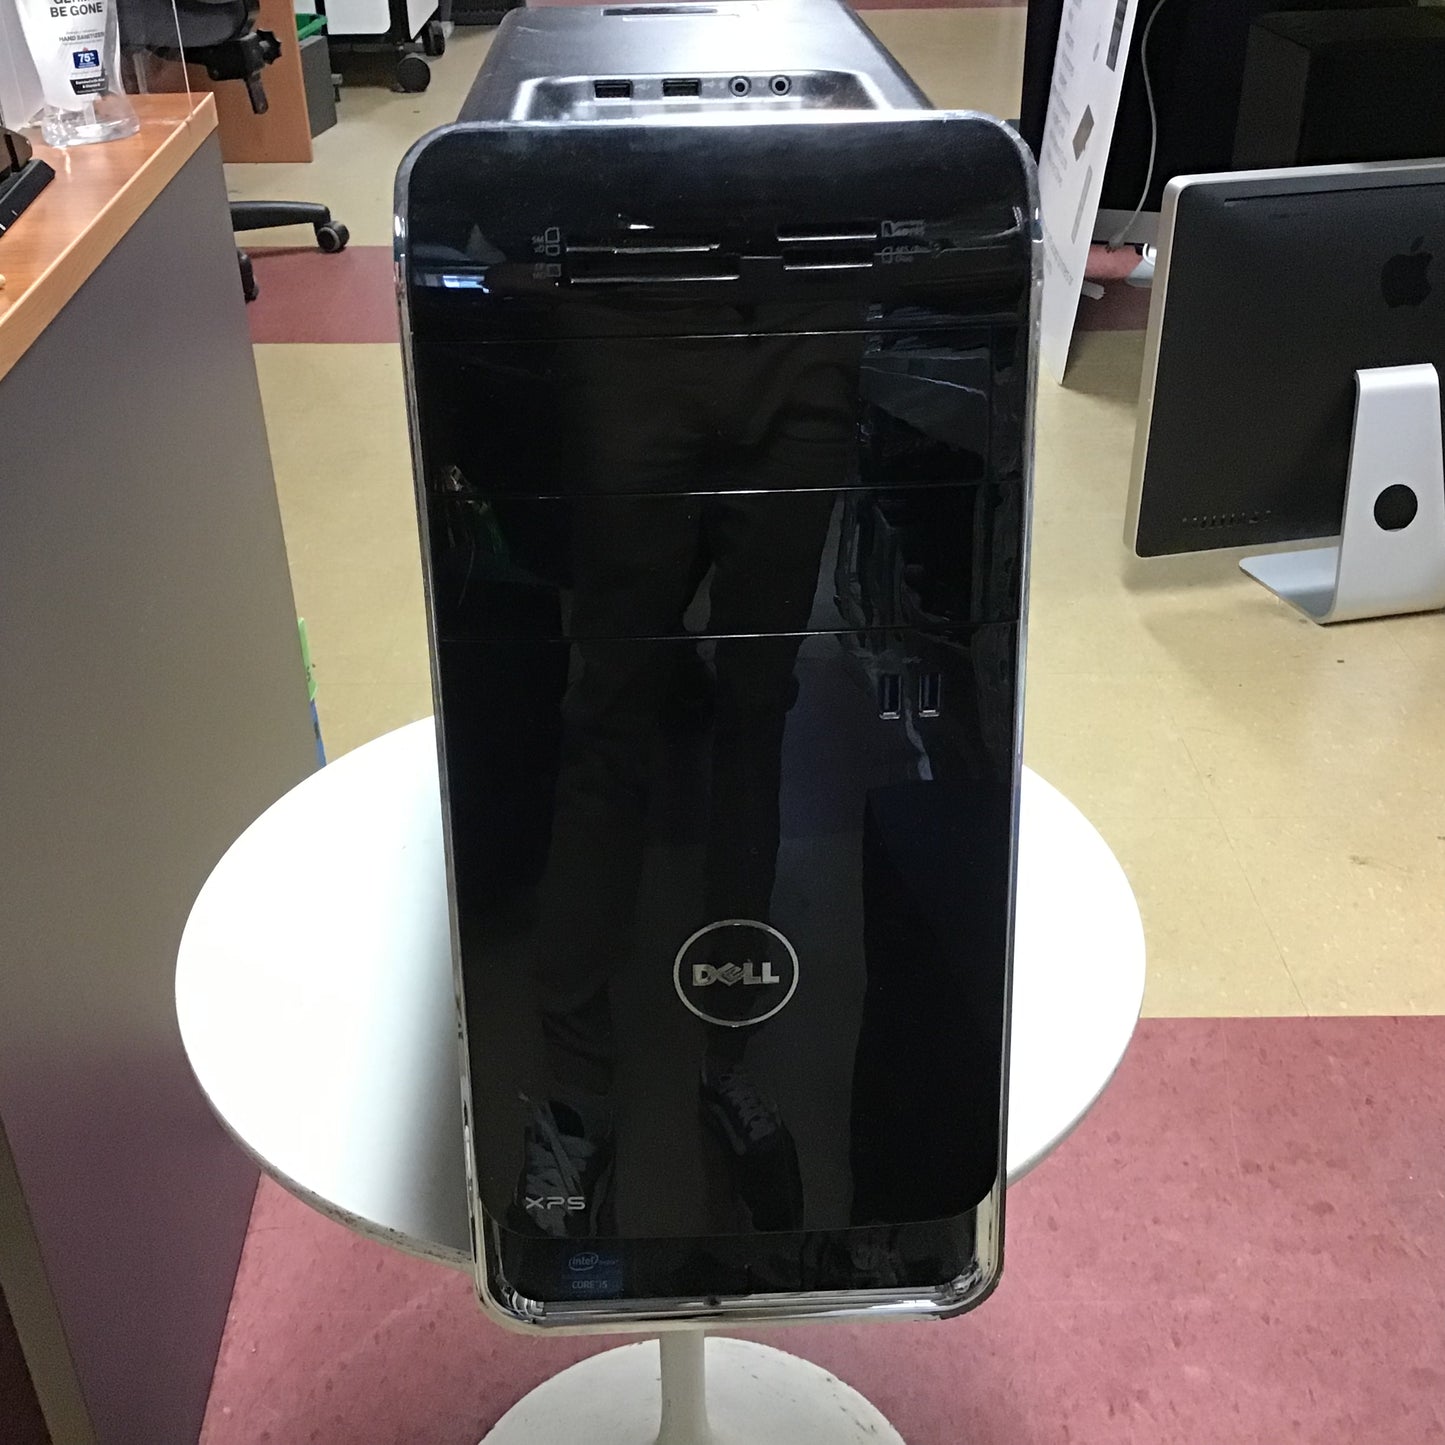 Dell XPS 8500 (BareBones)